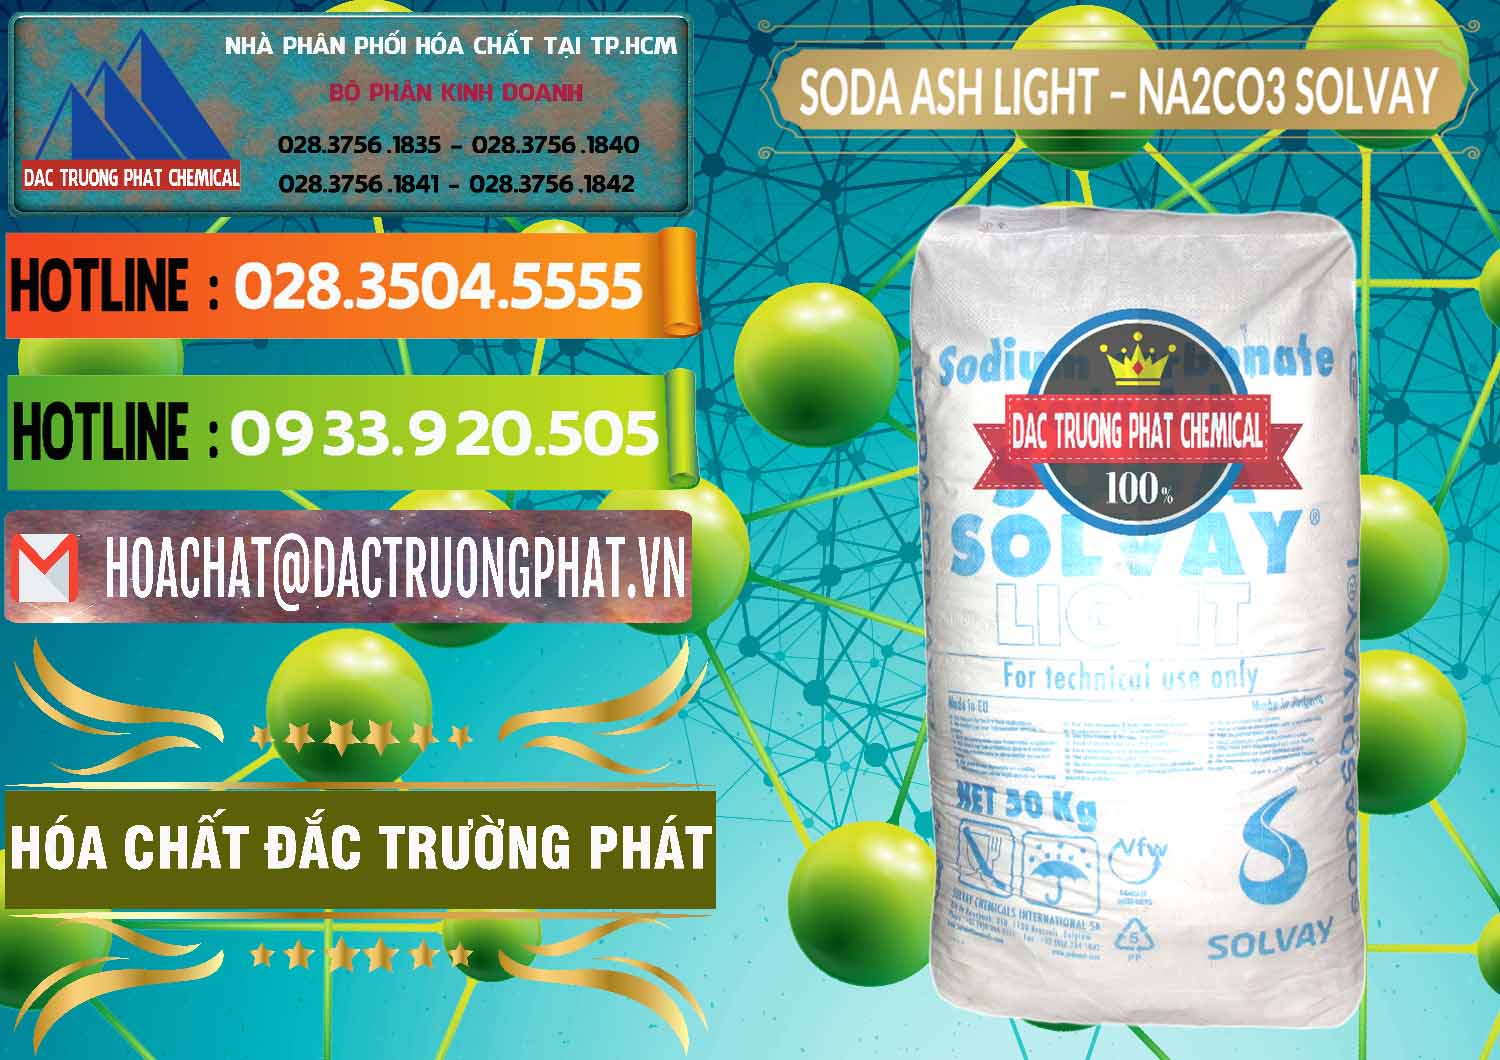 Nơi chuyên bán & cung ứng Soda Ash Light - NA2CO3 Solvay Bulgaria - 0126 - Nhà cung cấp & phân phối hóa chất tại TP.HCM - cungcaphoachat.com.vn